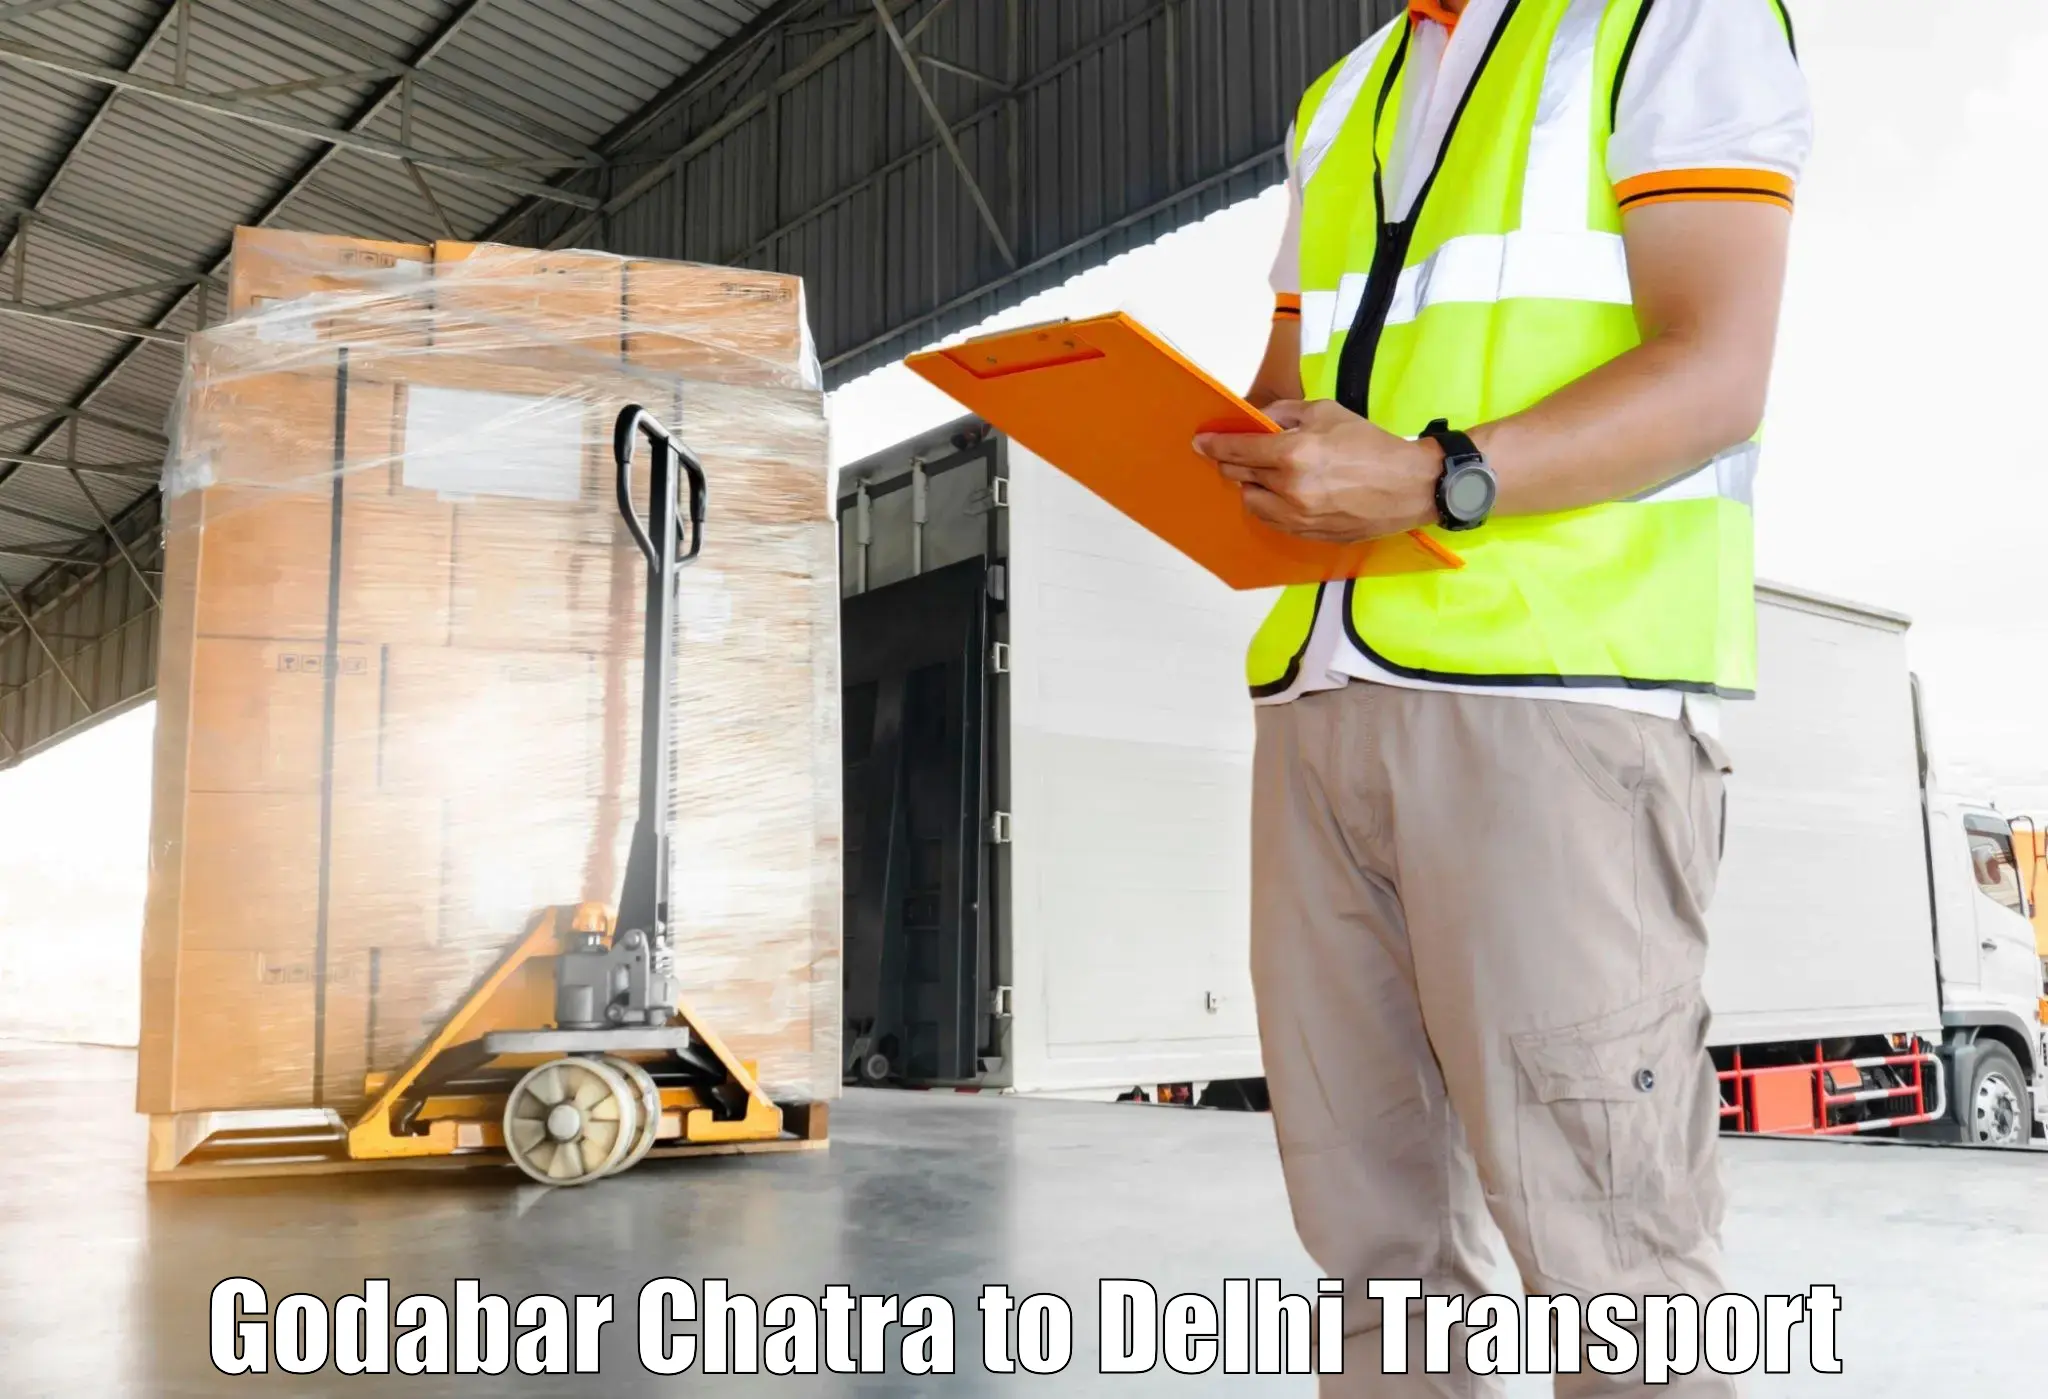 Express transport services Godabar Chatra to Jamia Millia Islamia New Delhi